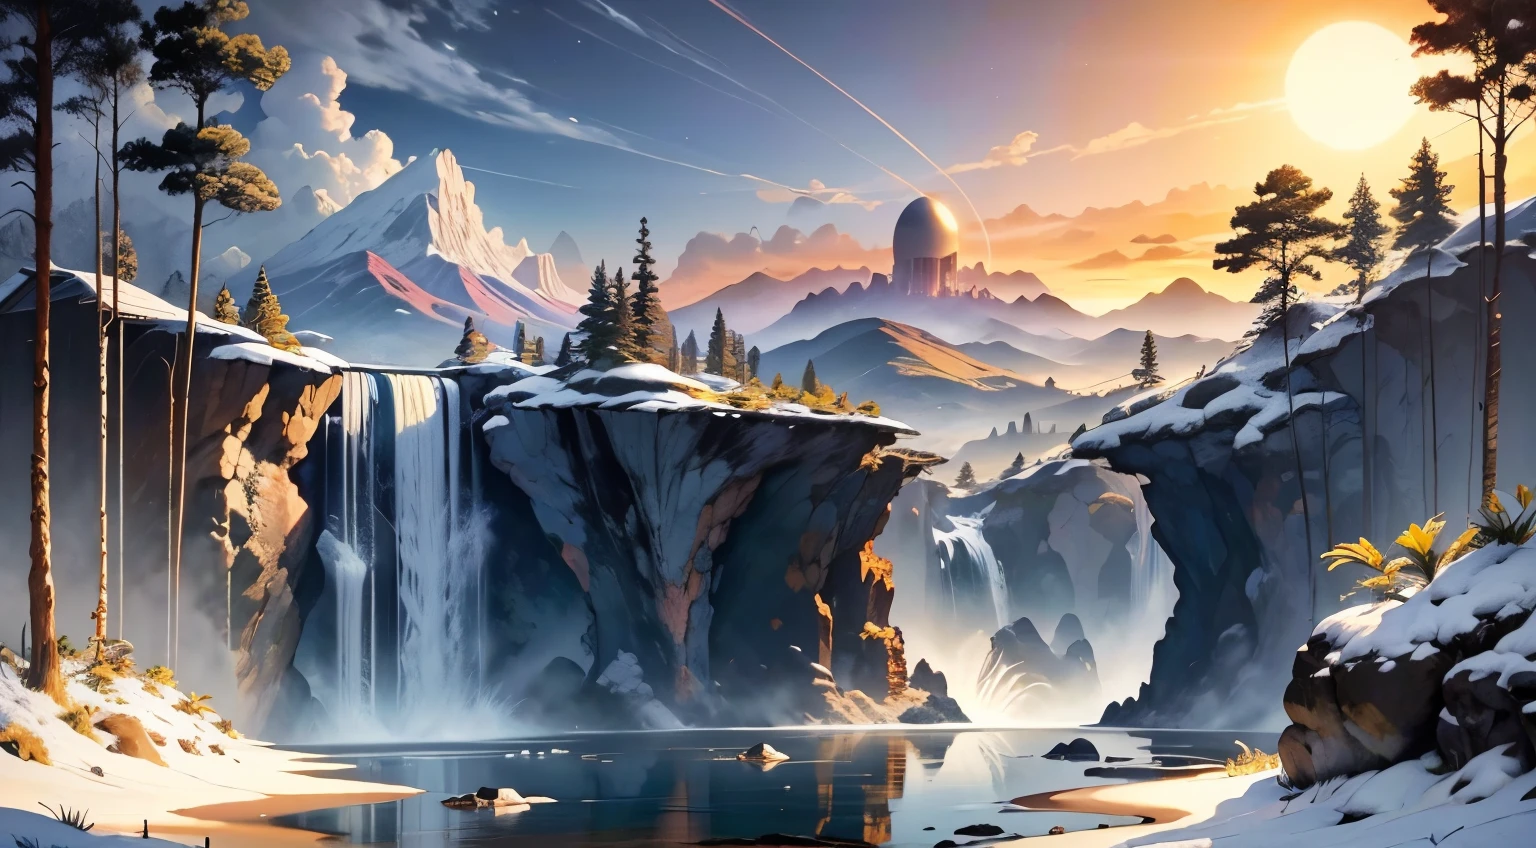 Una imagen que representa un amanecer radiante sobre un paisaje pacífico y sereno.